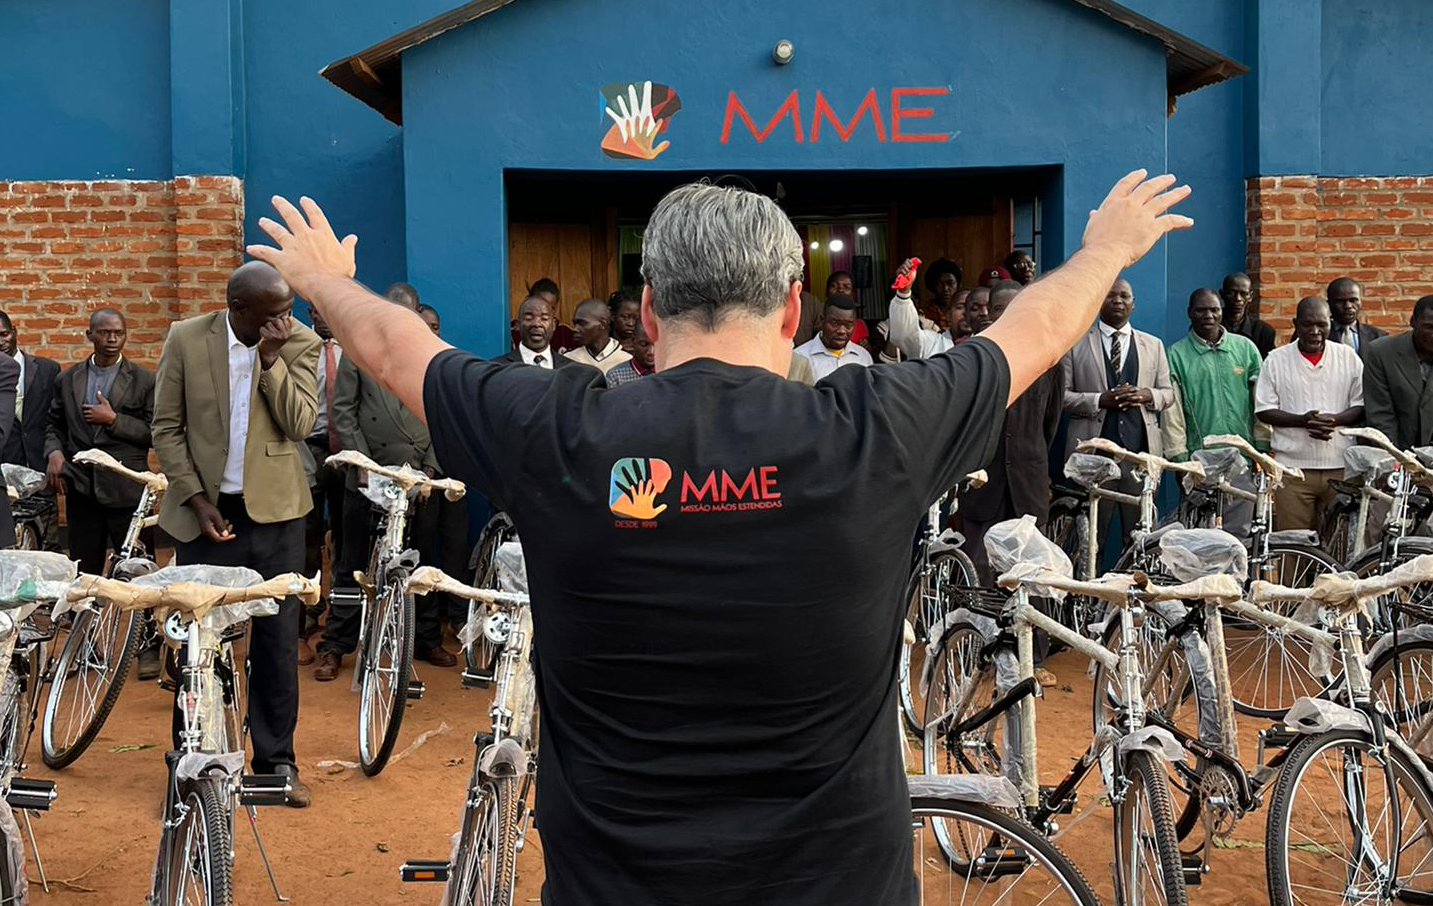 Igreja doa 100 bicicletas para pastores pregarem em aldeias na África